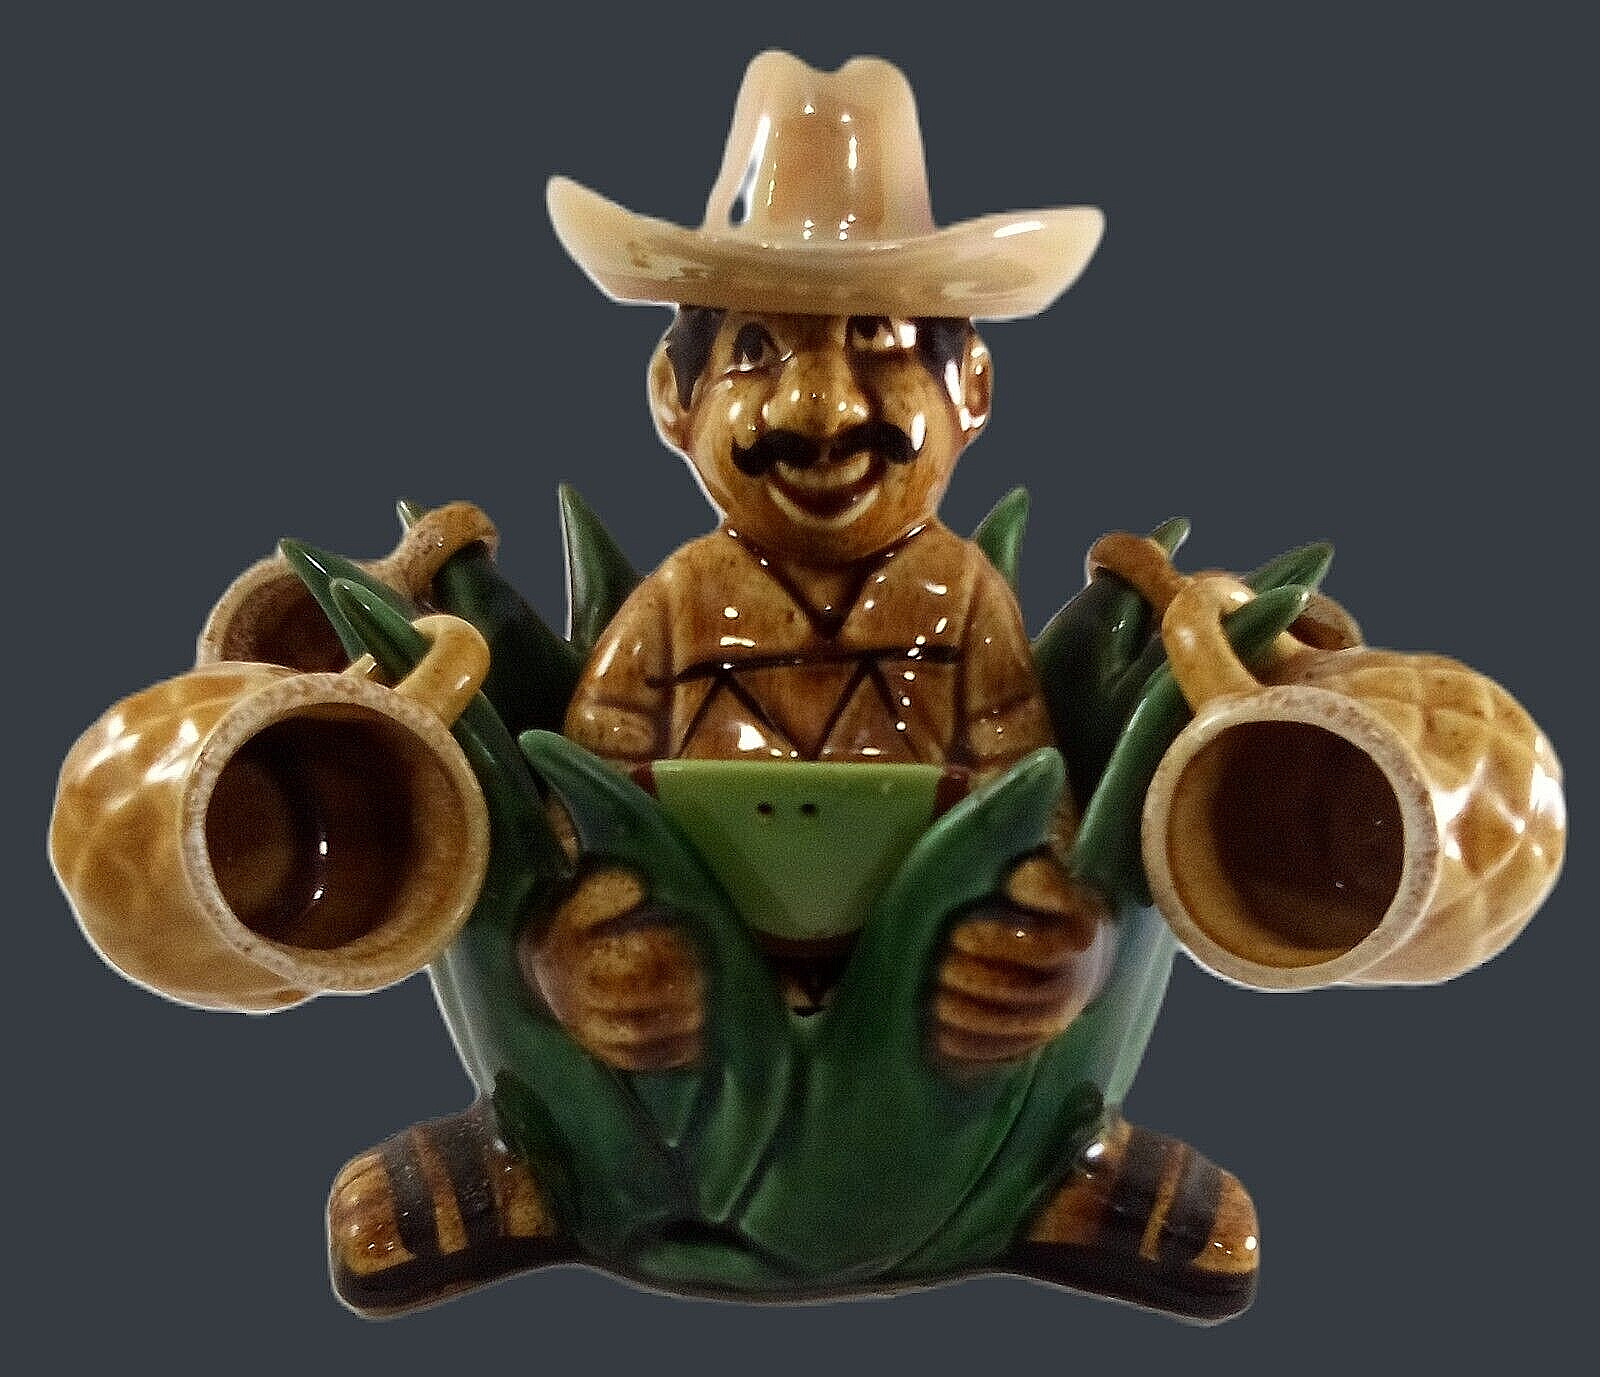 Vintage Ceramic Tequila Decanter Set - 4 cups -salt shaker - 